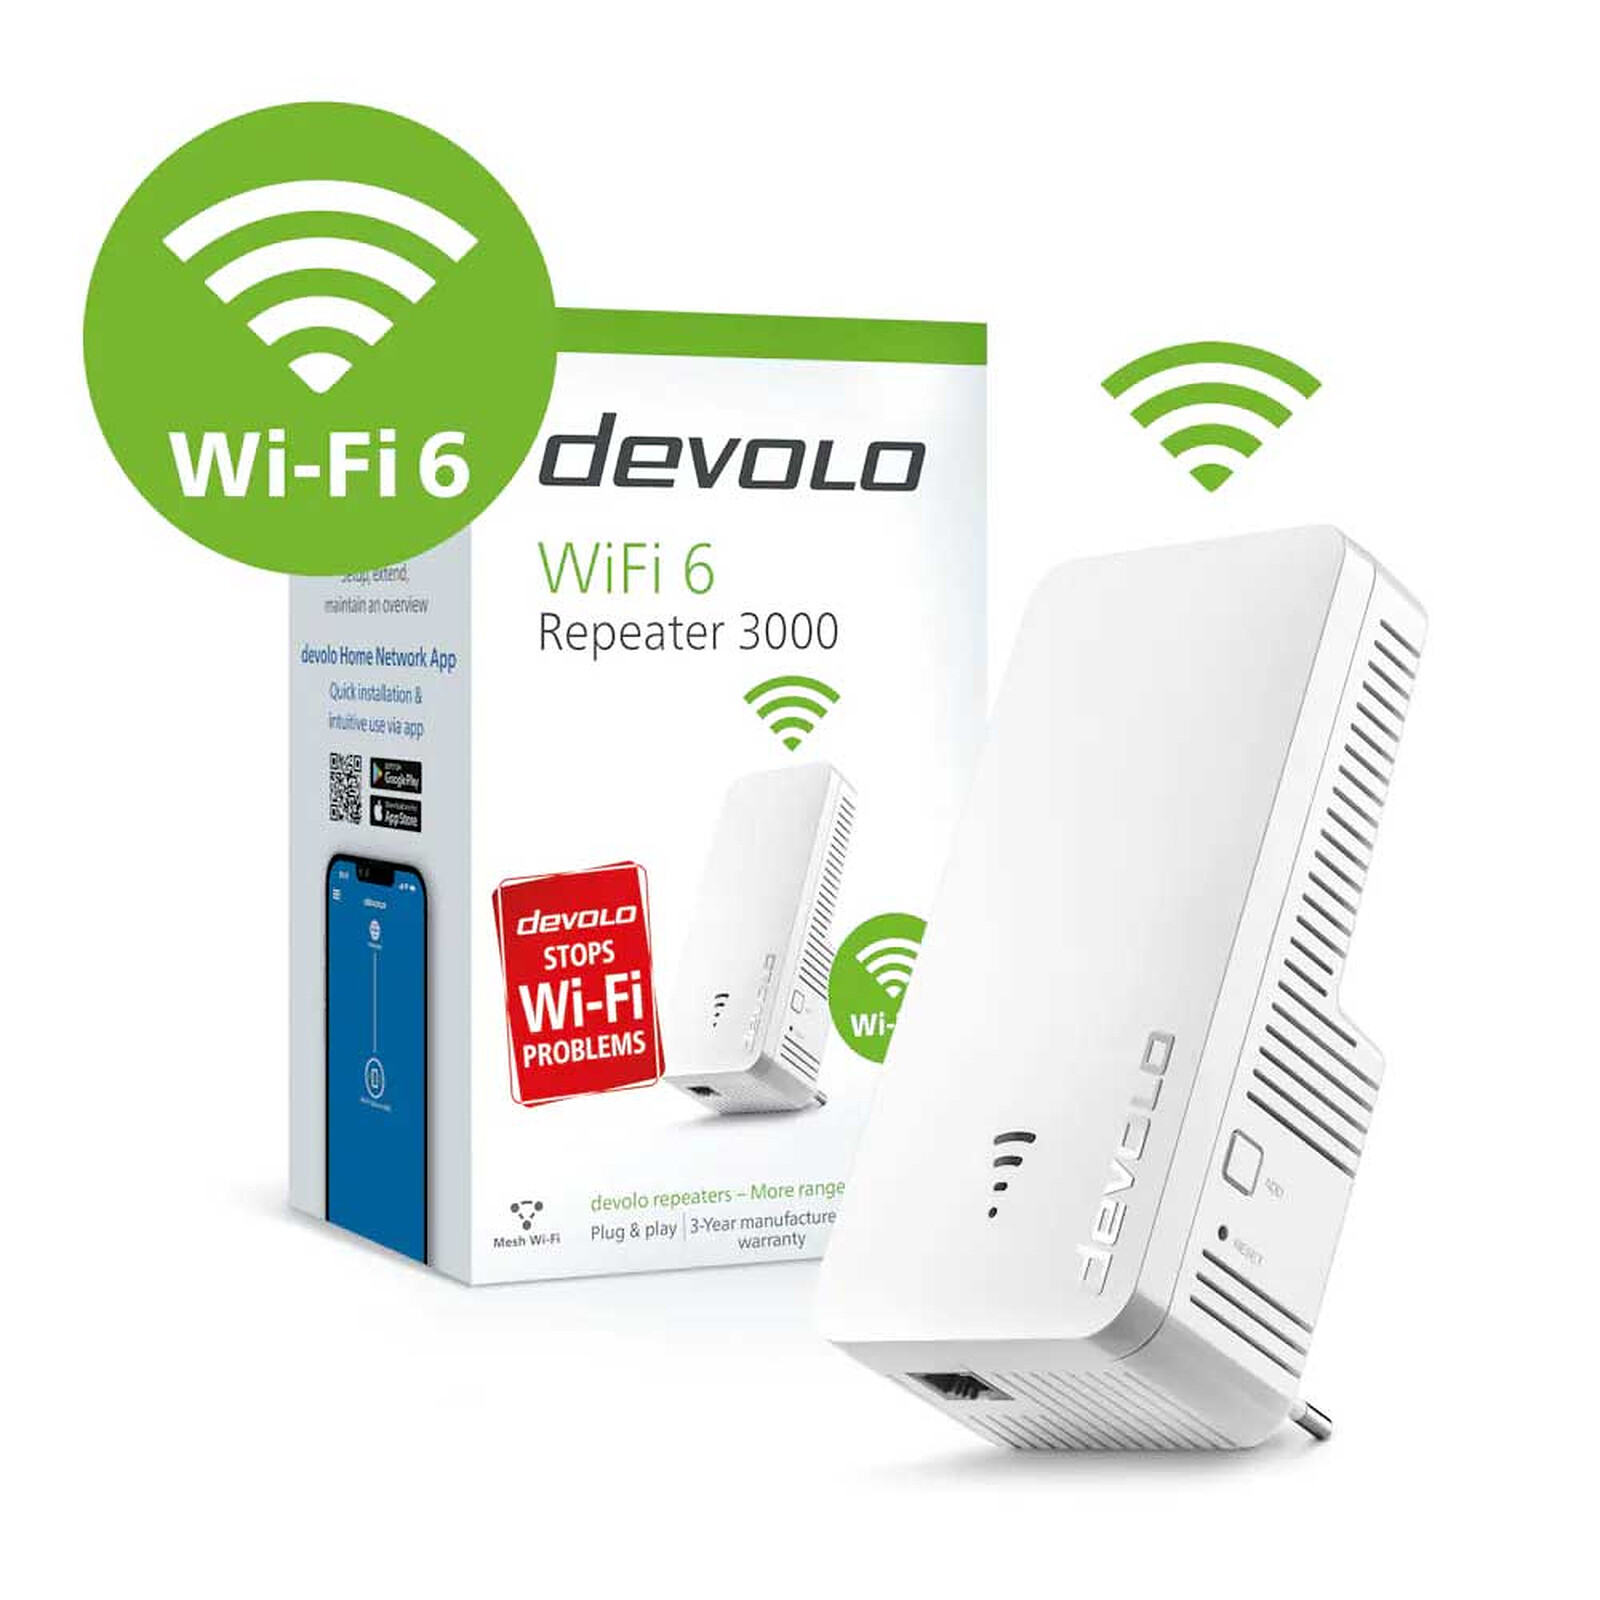 Devolo WiFi Repeater+ ac Review